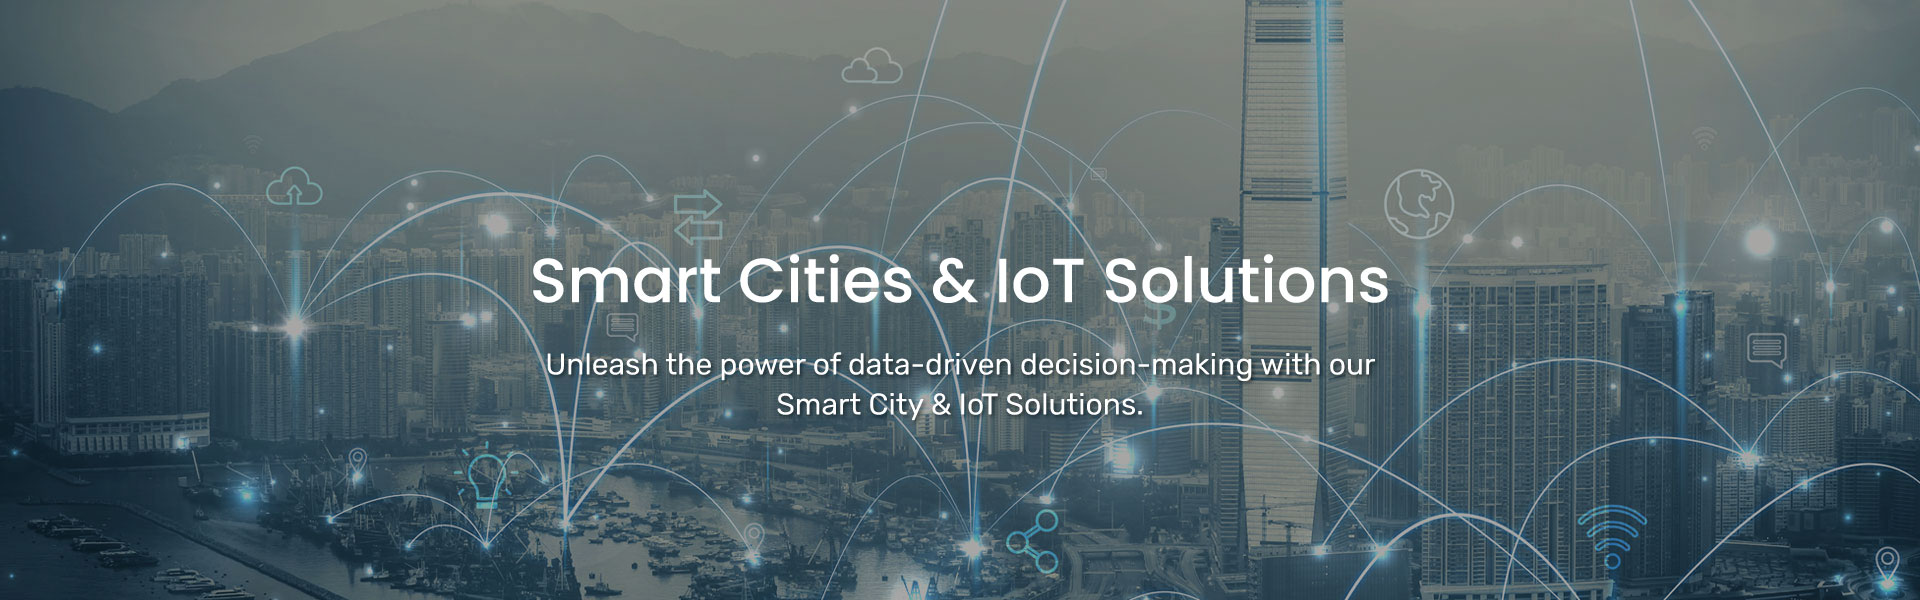 Smart Cities & IoT Solutions